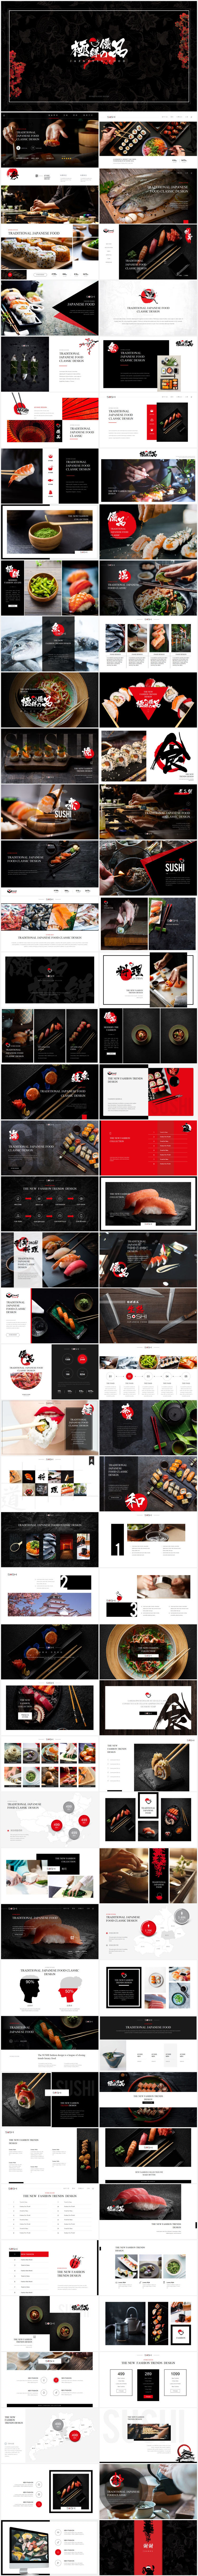 日本料理keynote模板